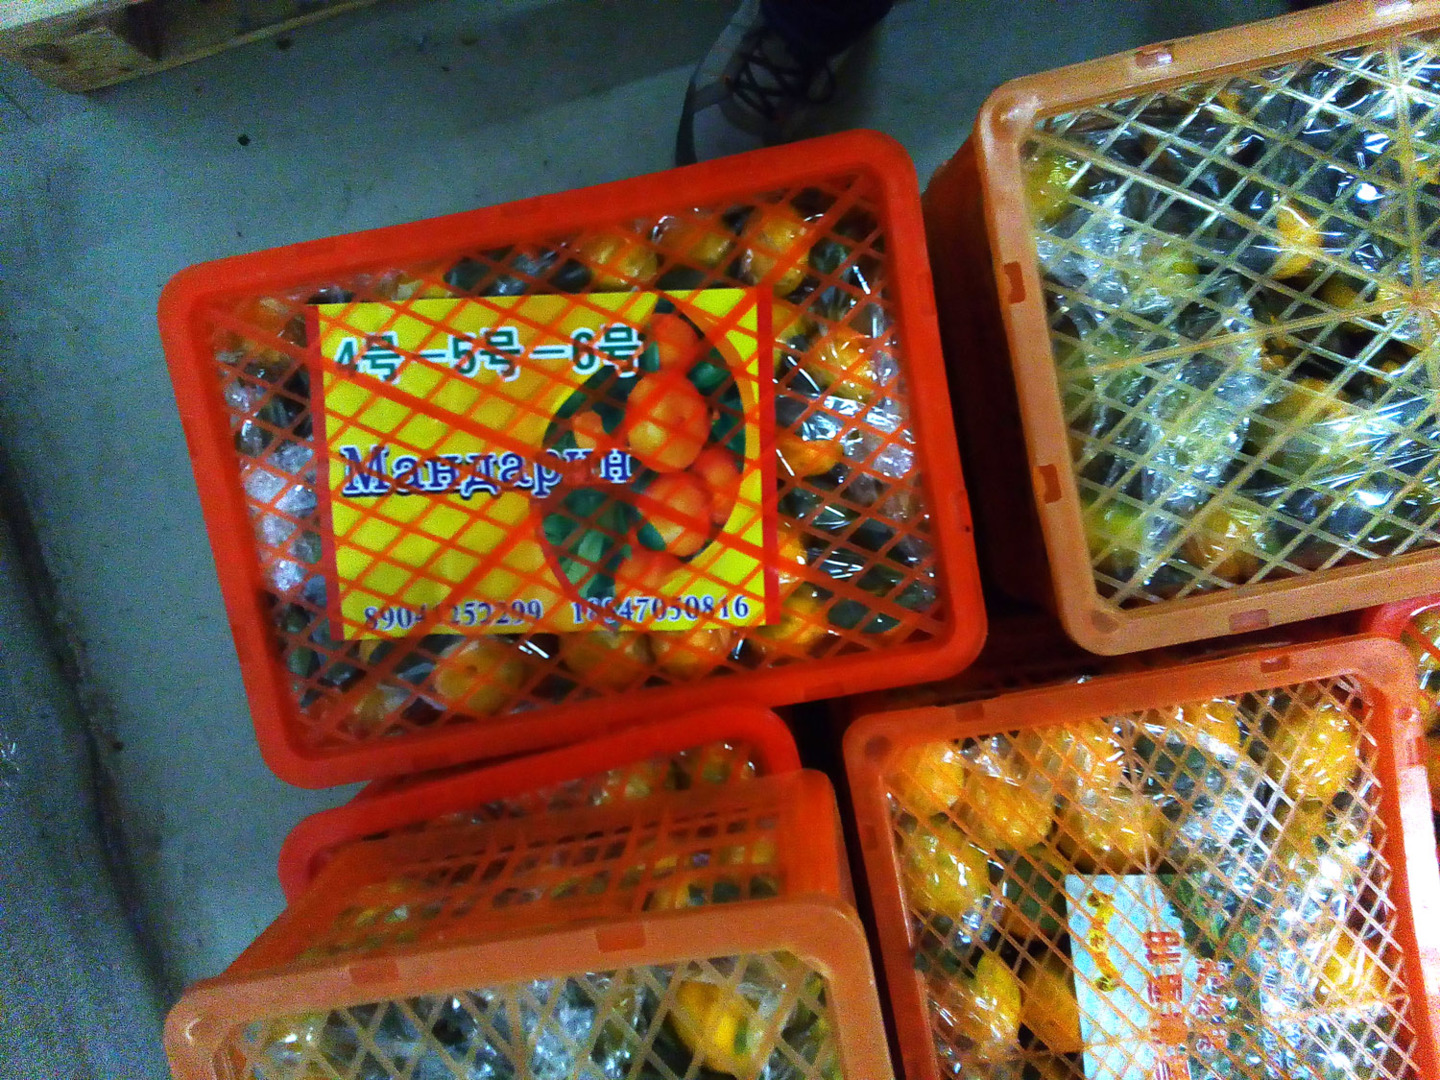 Расследование Росконтроля: что продают под видом абхазских мандаринов?